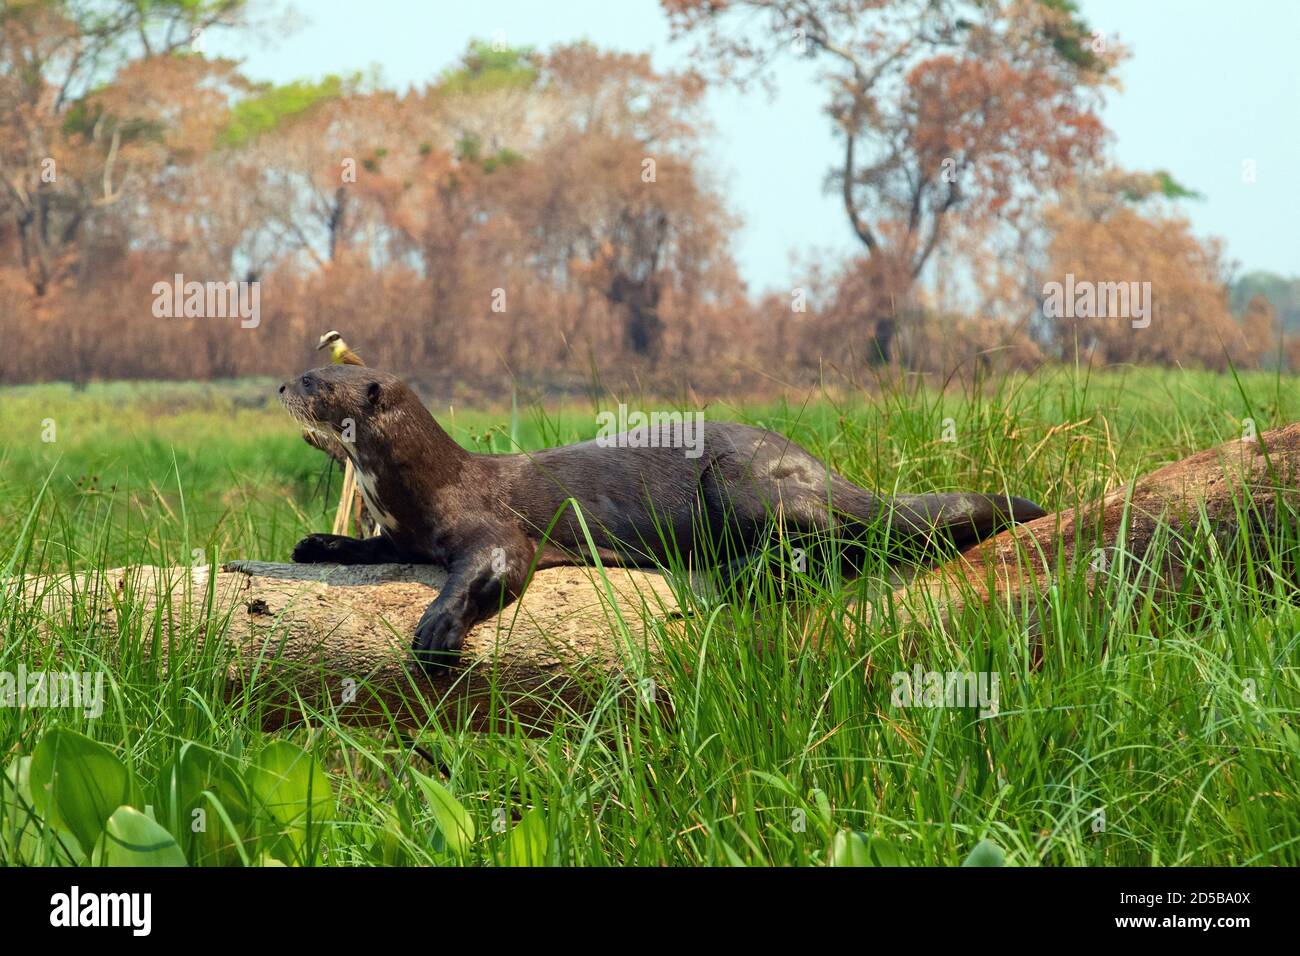 CORUMBÁ, MS - 03.10.2020: VERBRENNUNG IM PANTANAL MT - Riesenotter ruht auf einem gefallenen Stamm im Pantanal Mato-grossense, mit der im Hintergrund verbrannten Vegetation (Foto: Daniel De Granville/Fotoarena) Stockfoto